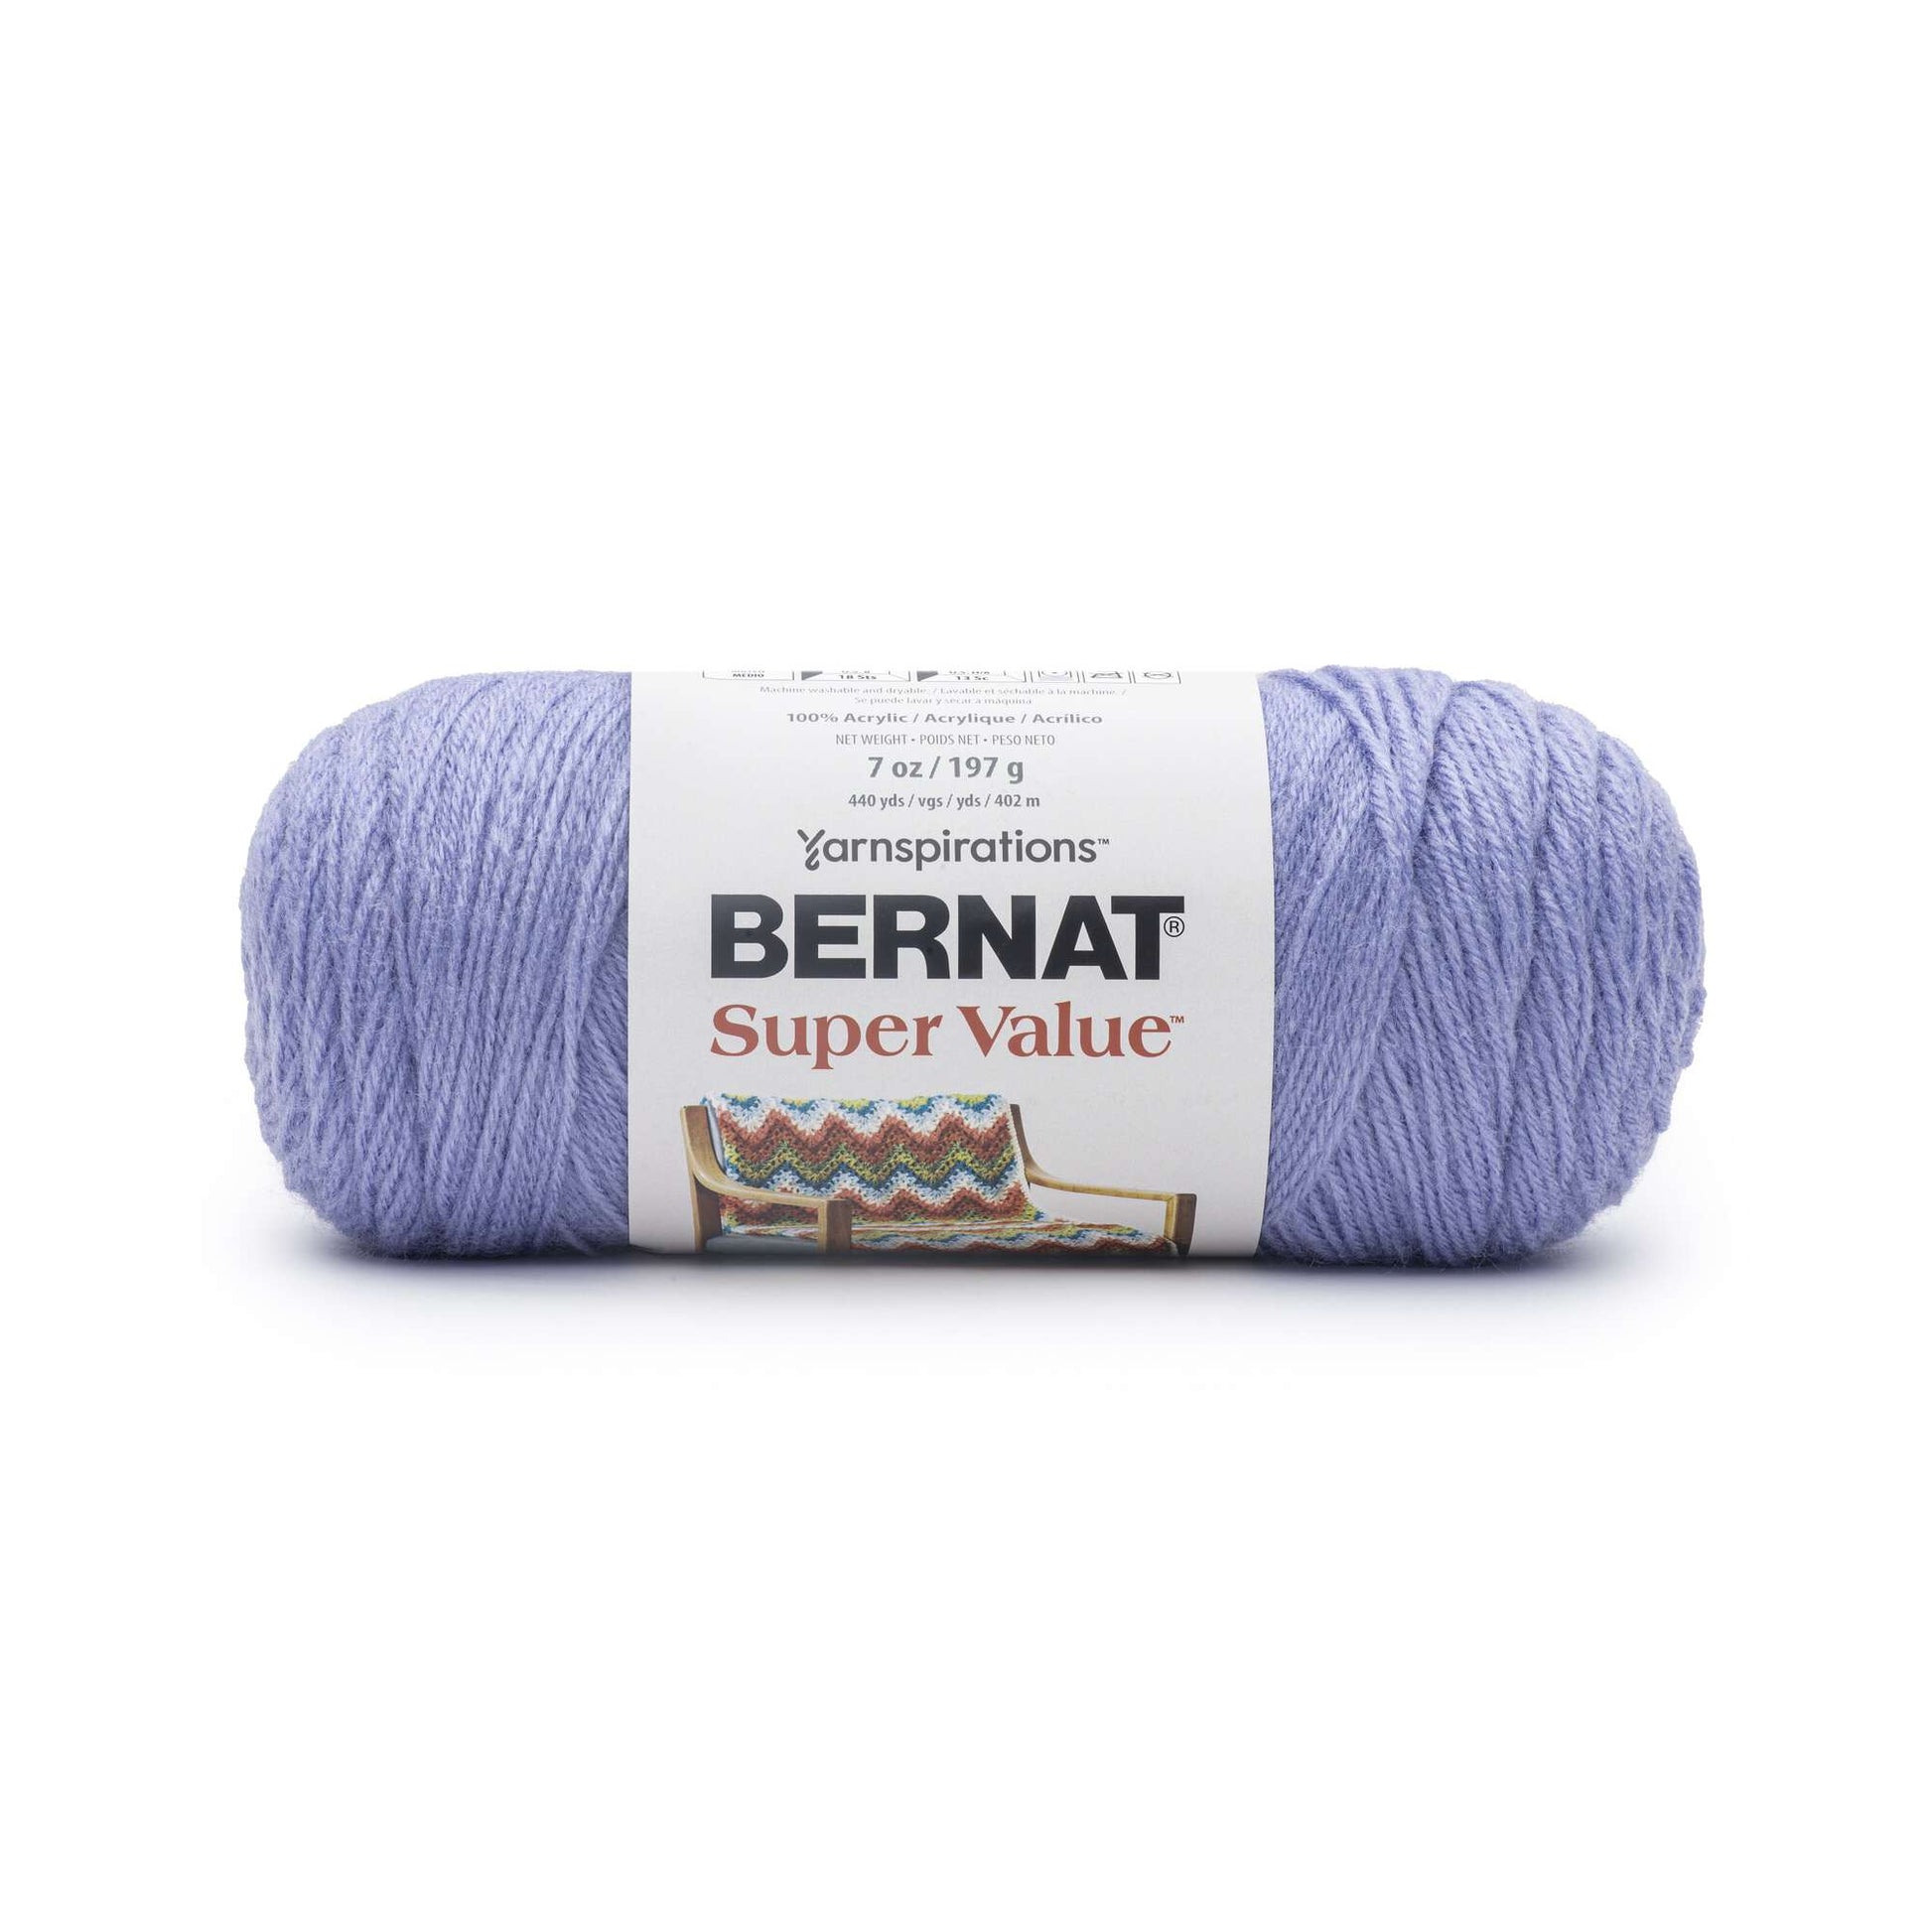 Bernat Super Value Solid Yarn-Grey Ragg, Multipack of 3